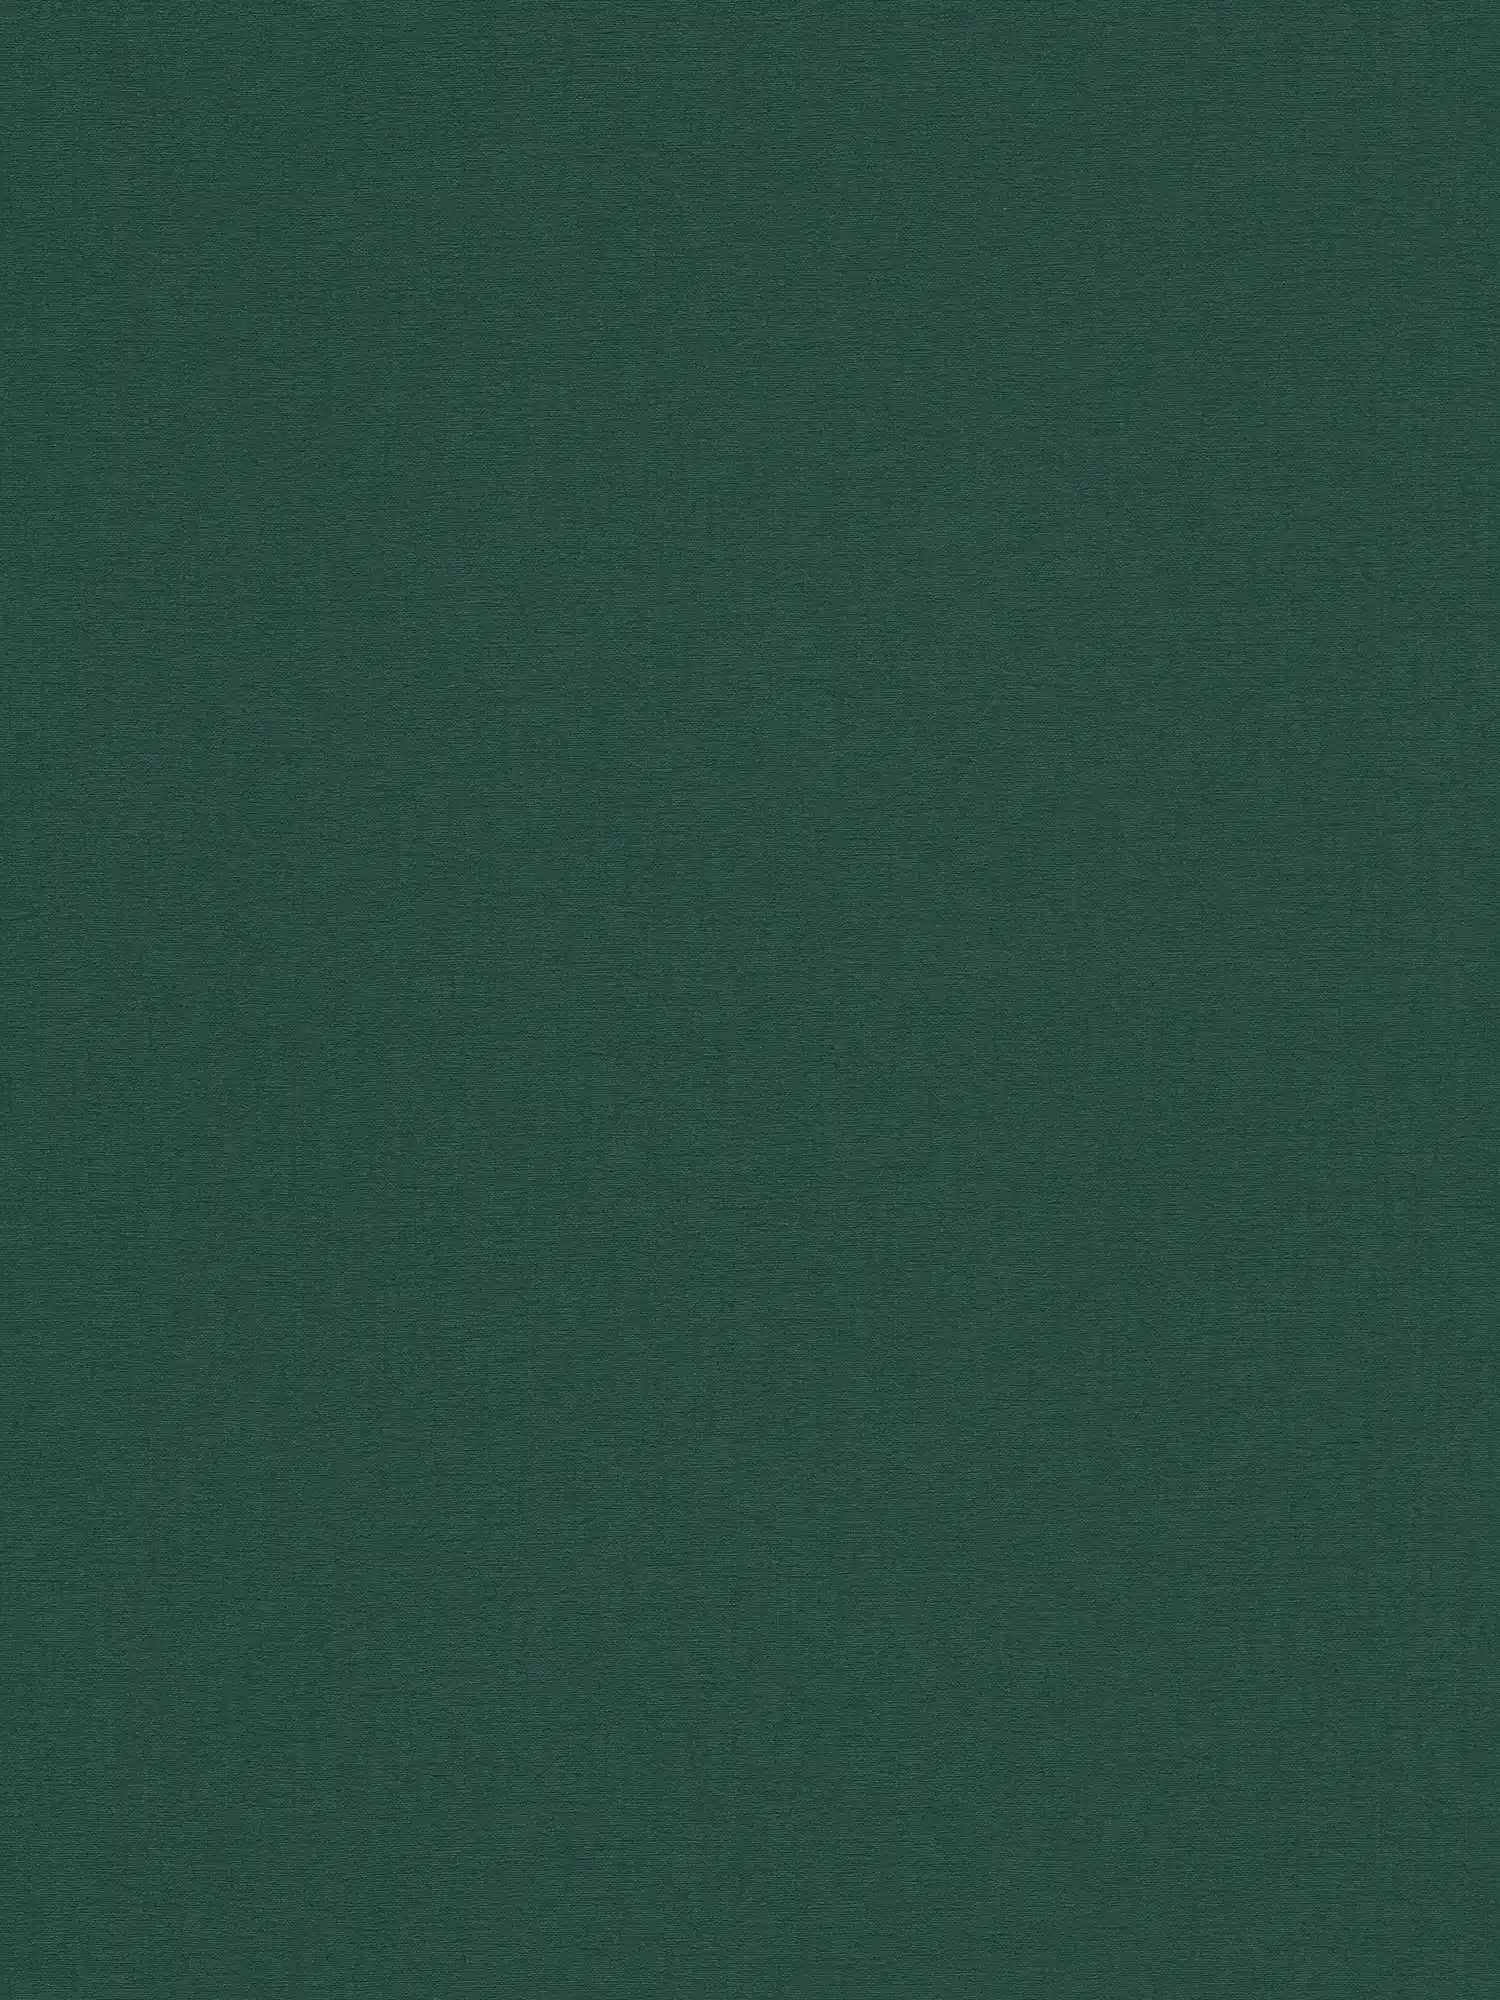 Papel pintado unitario con textura textil mate - verde, verde oscuro
